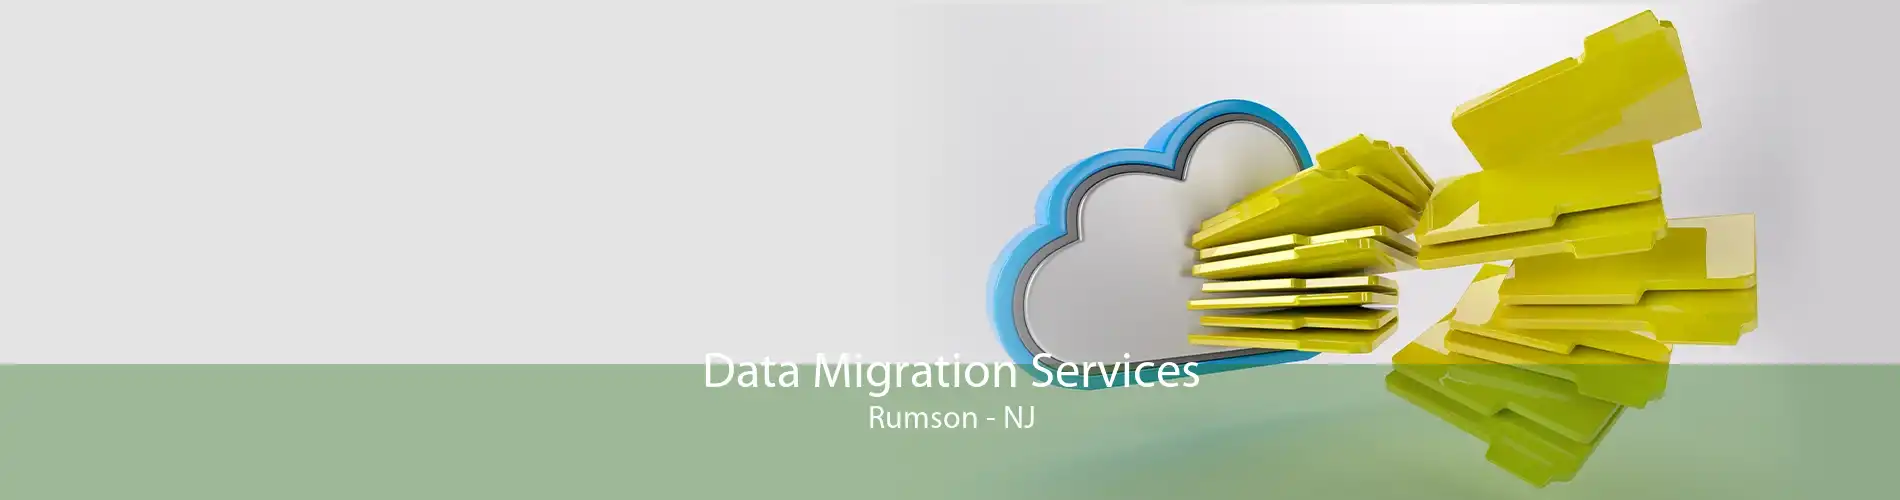 Data Migration Services Rumson - NJ